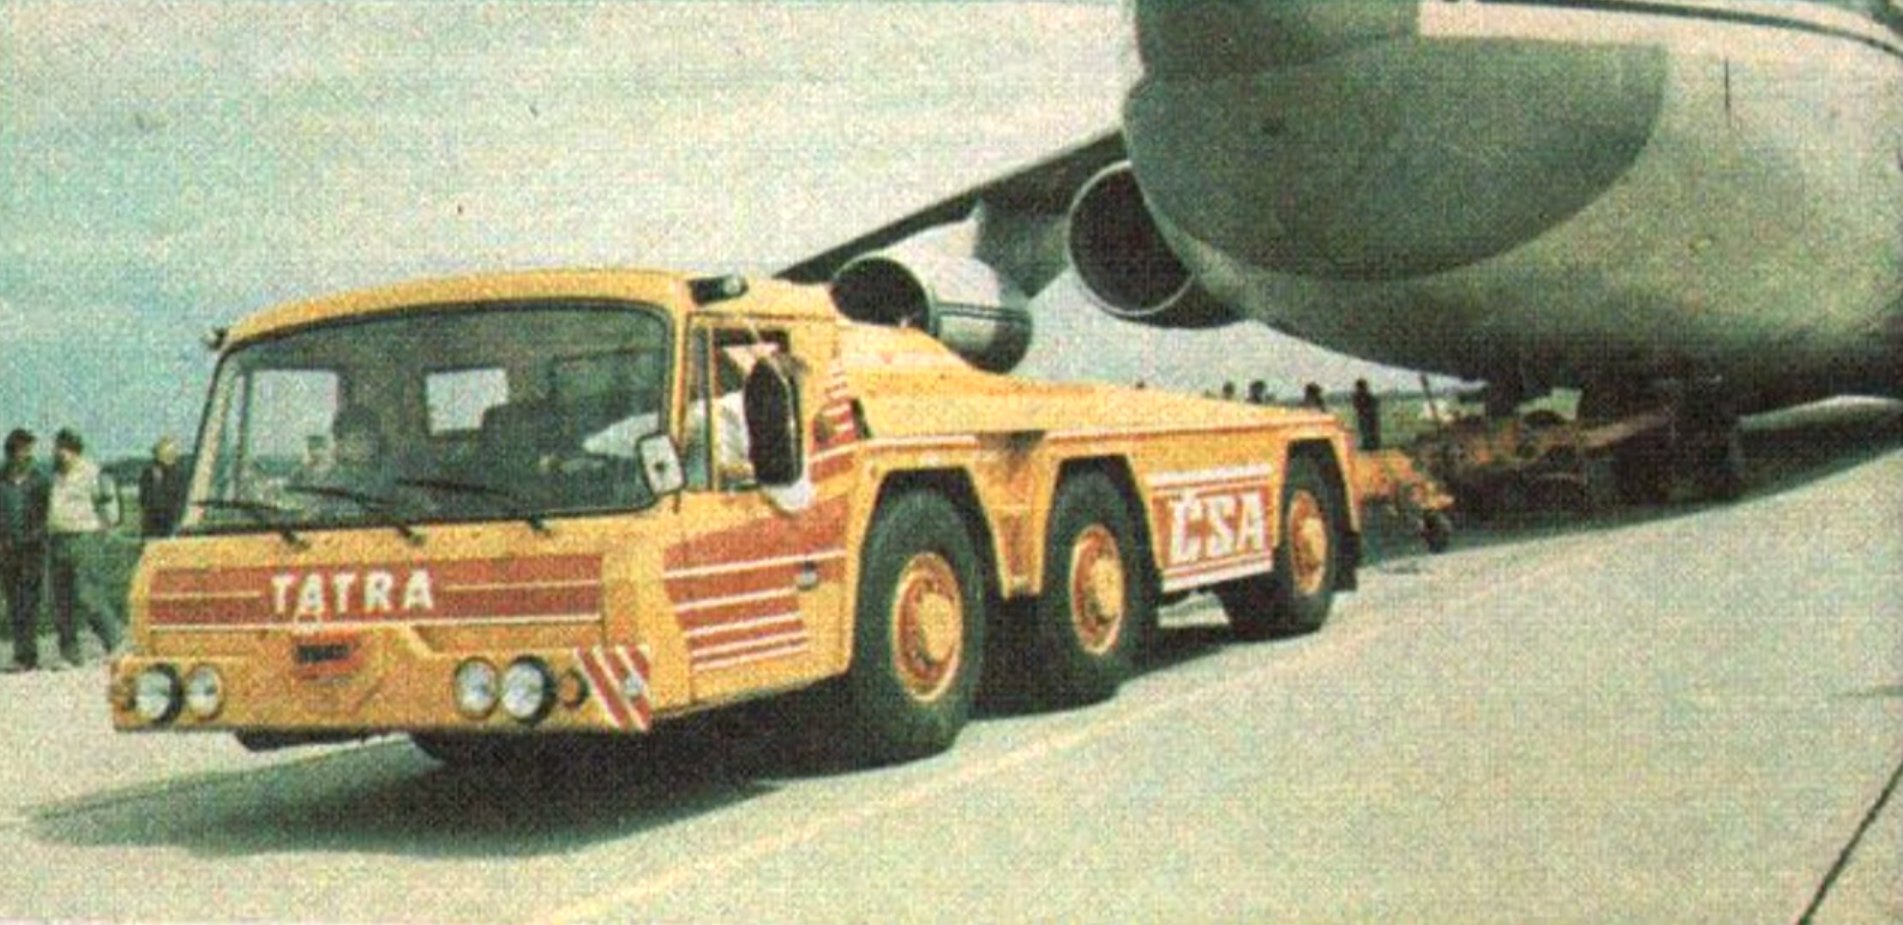 Tatra 815 TPL